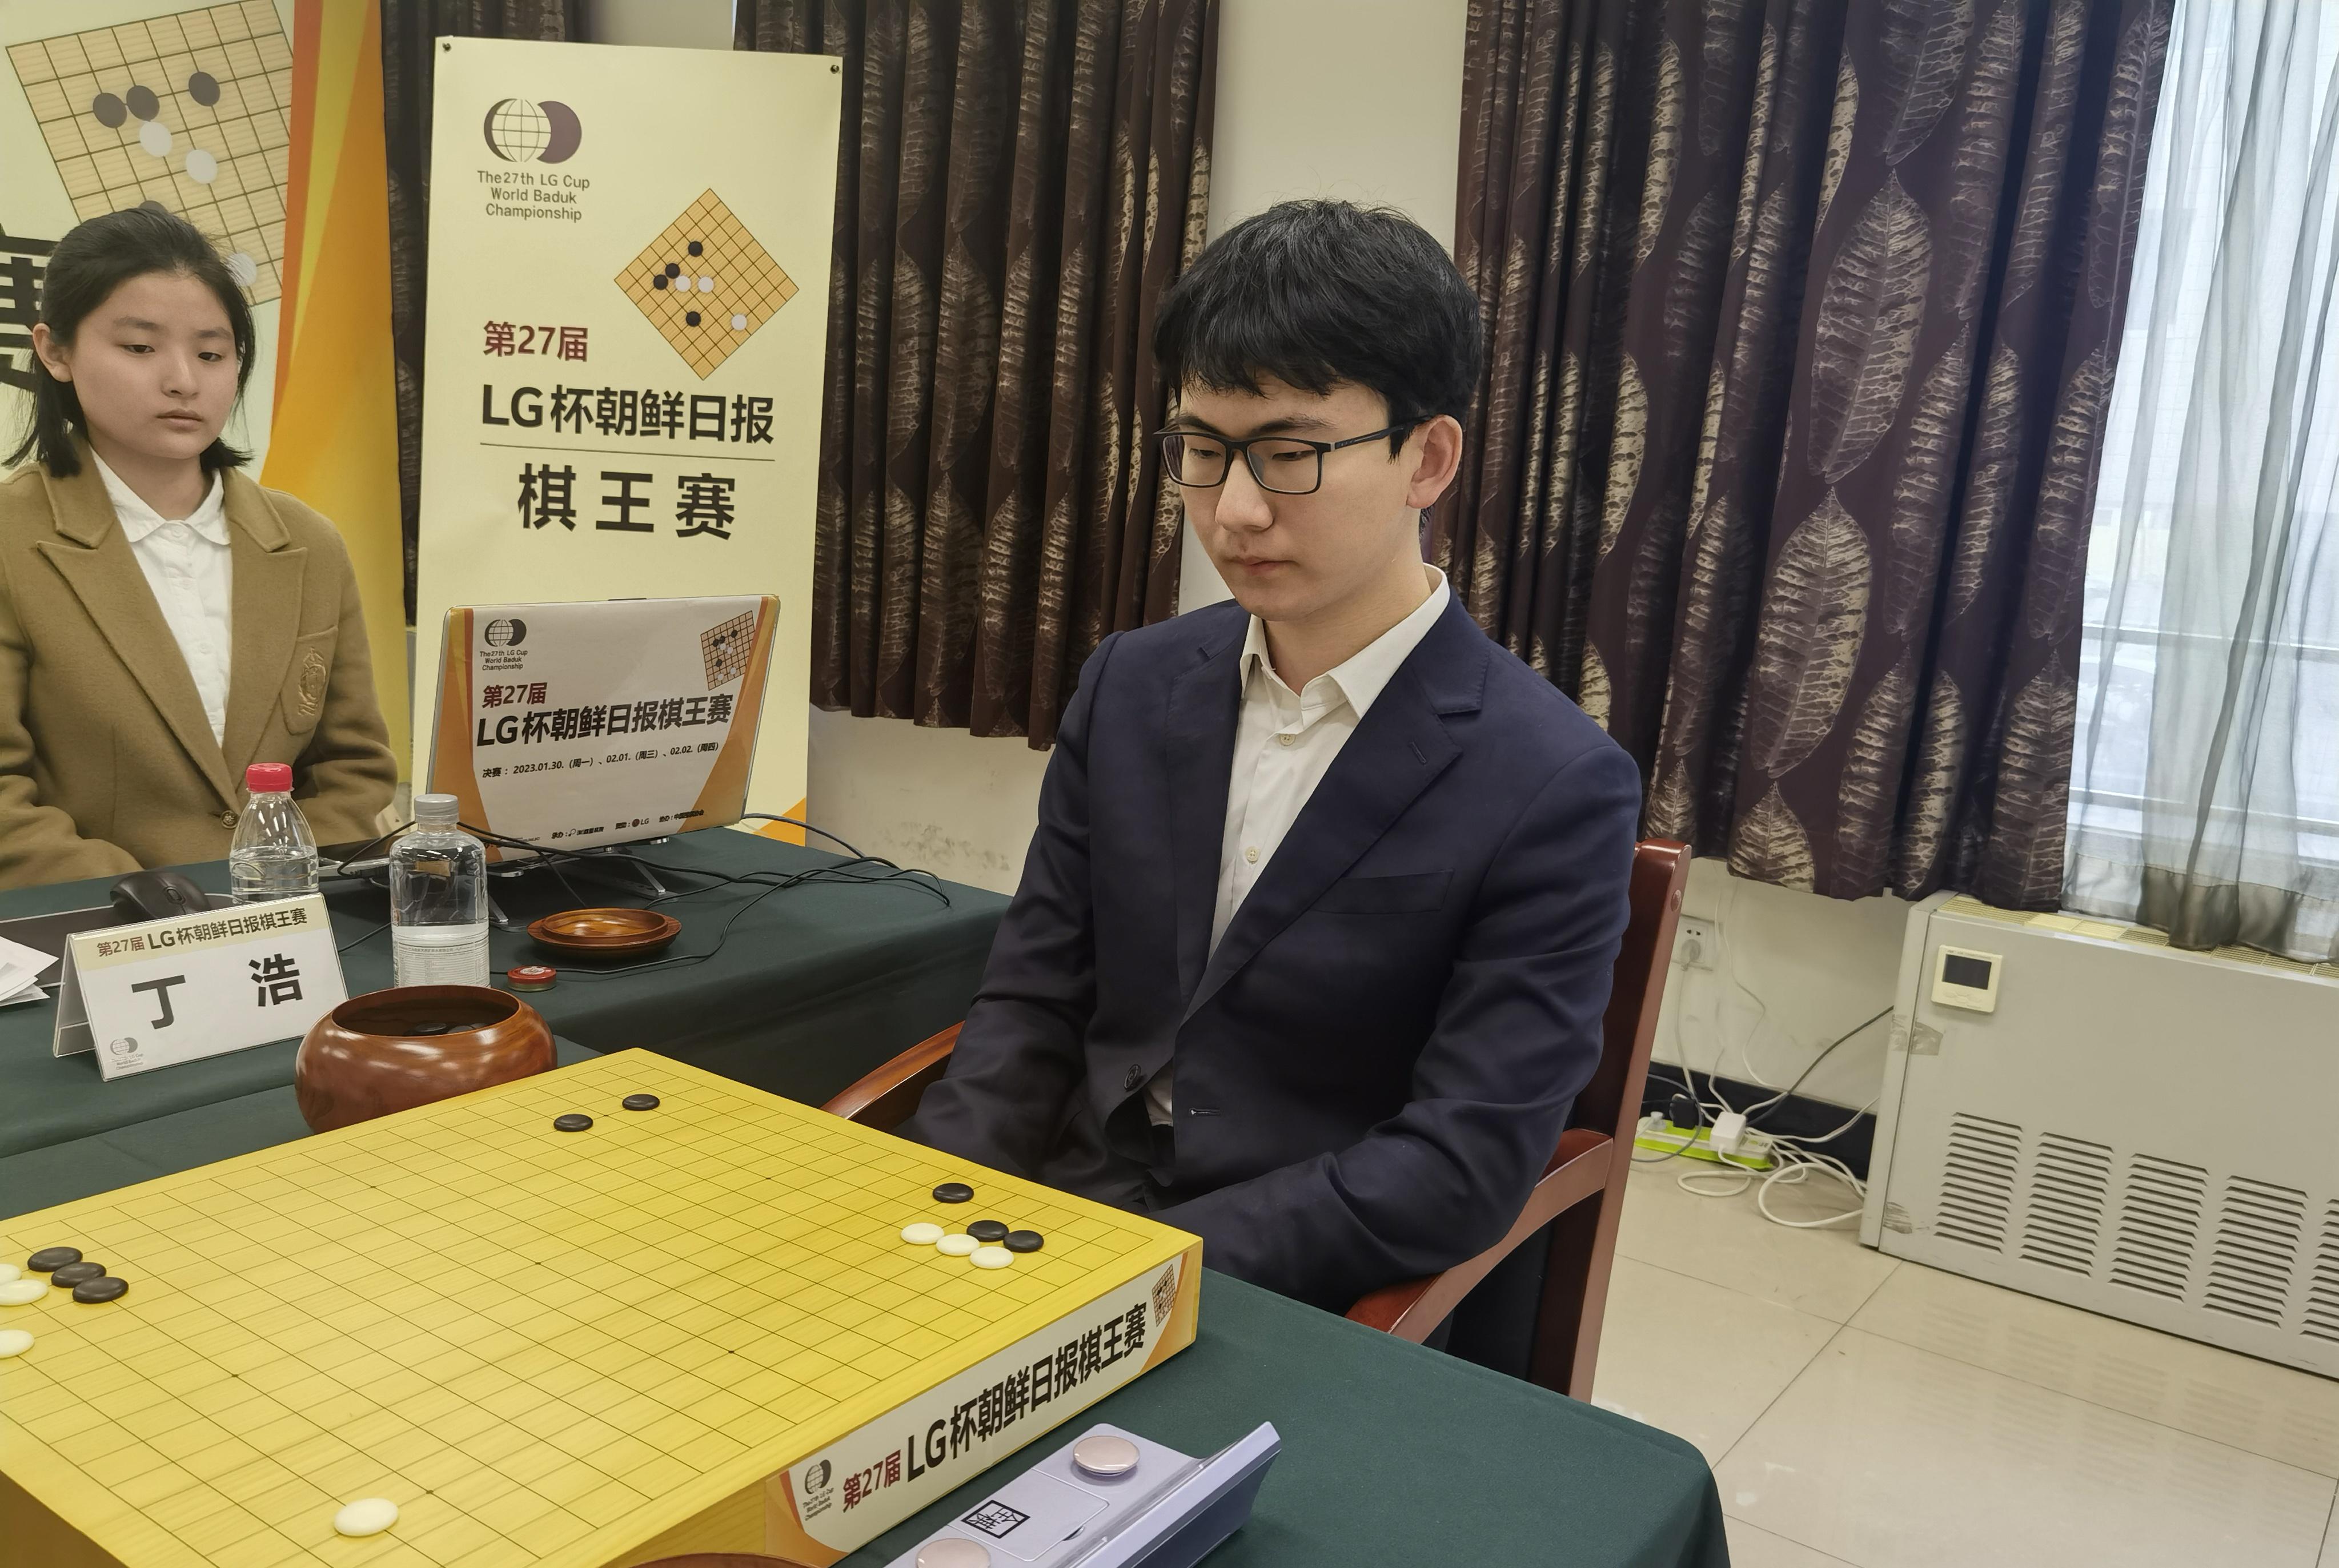 捧得LG杯 丁浩成为中国首位00后围棋世界冠军